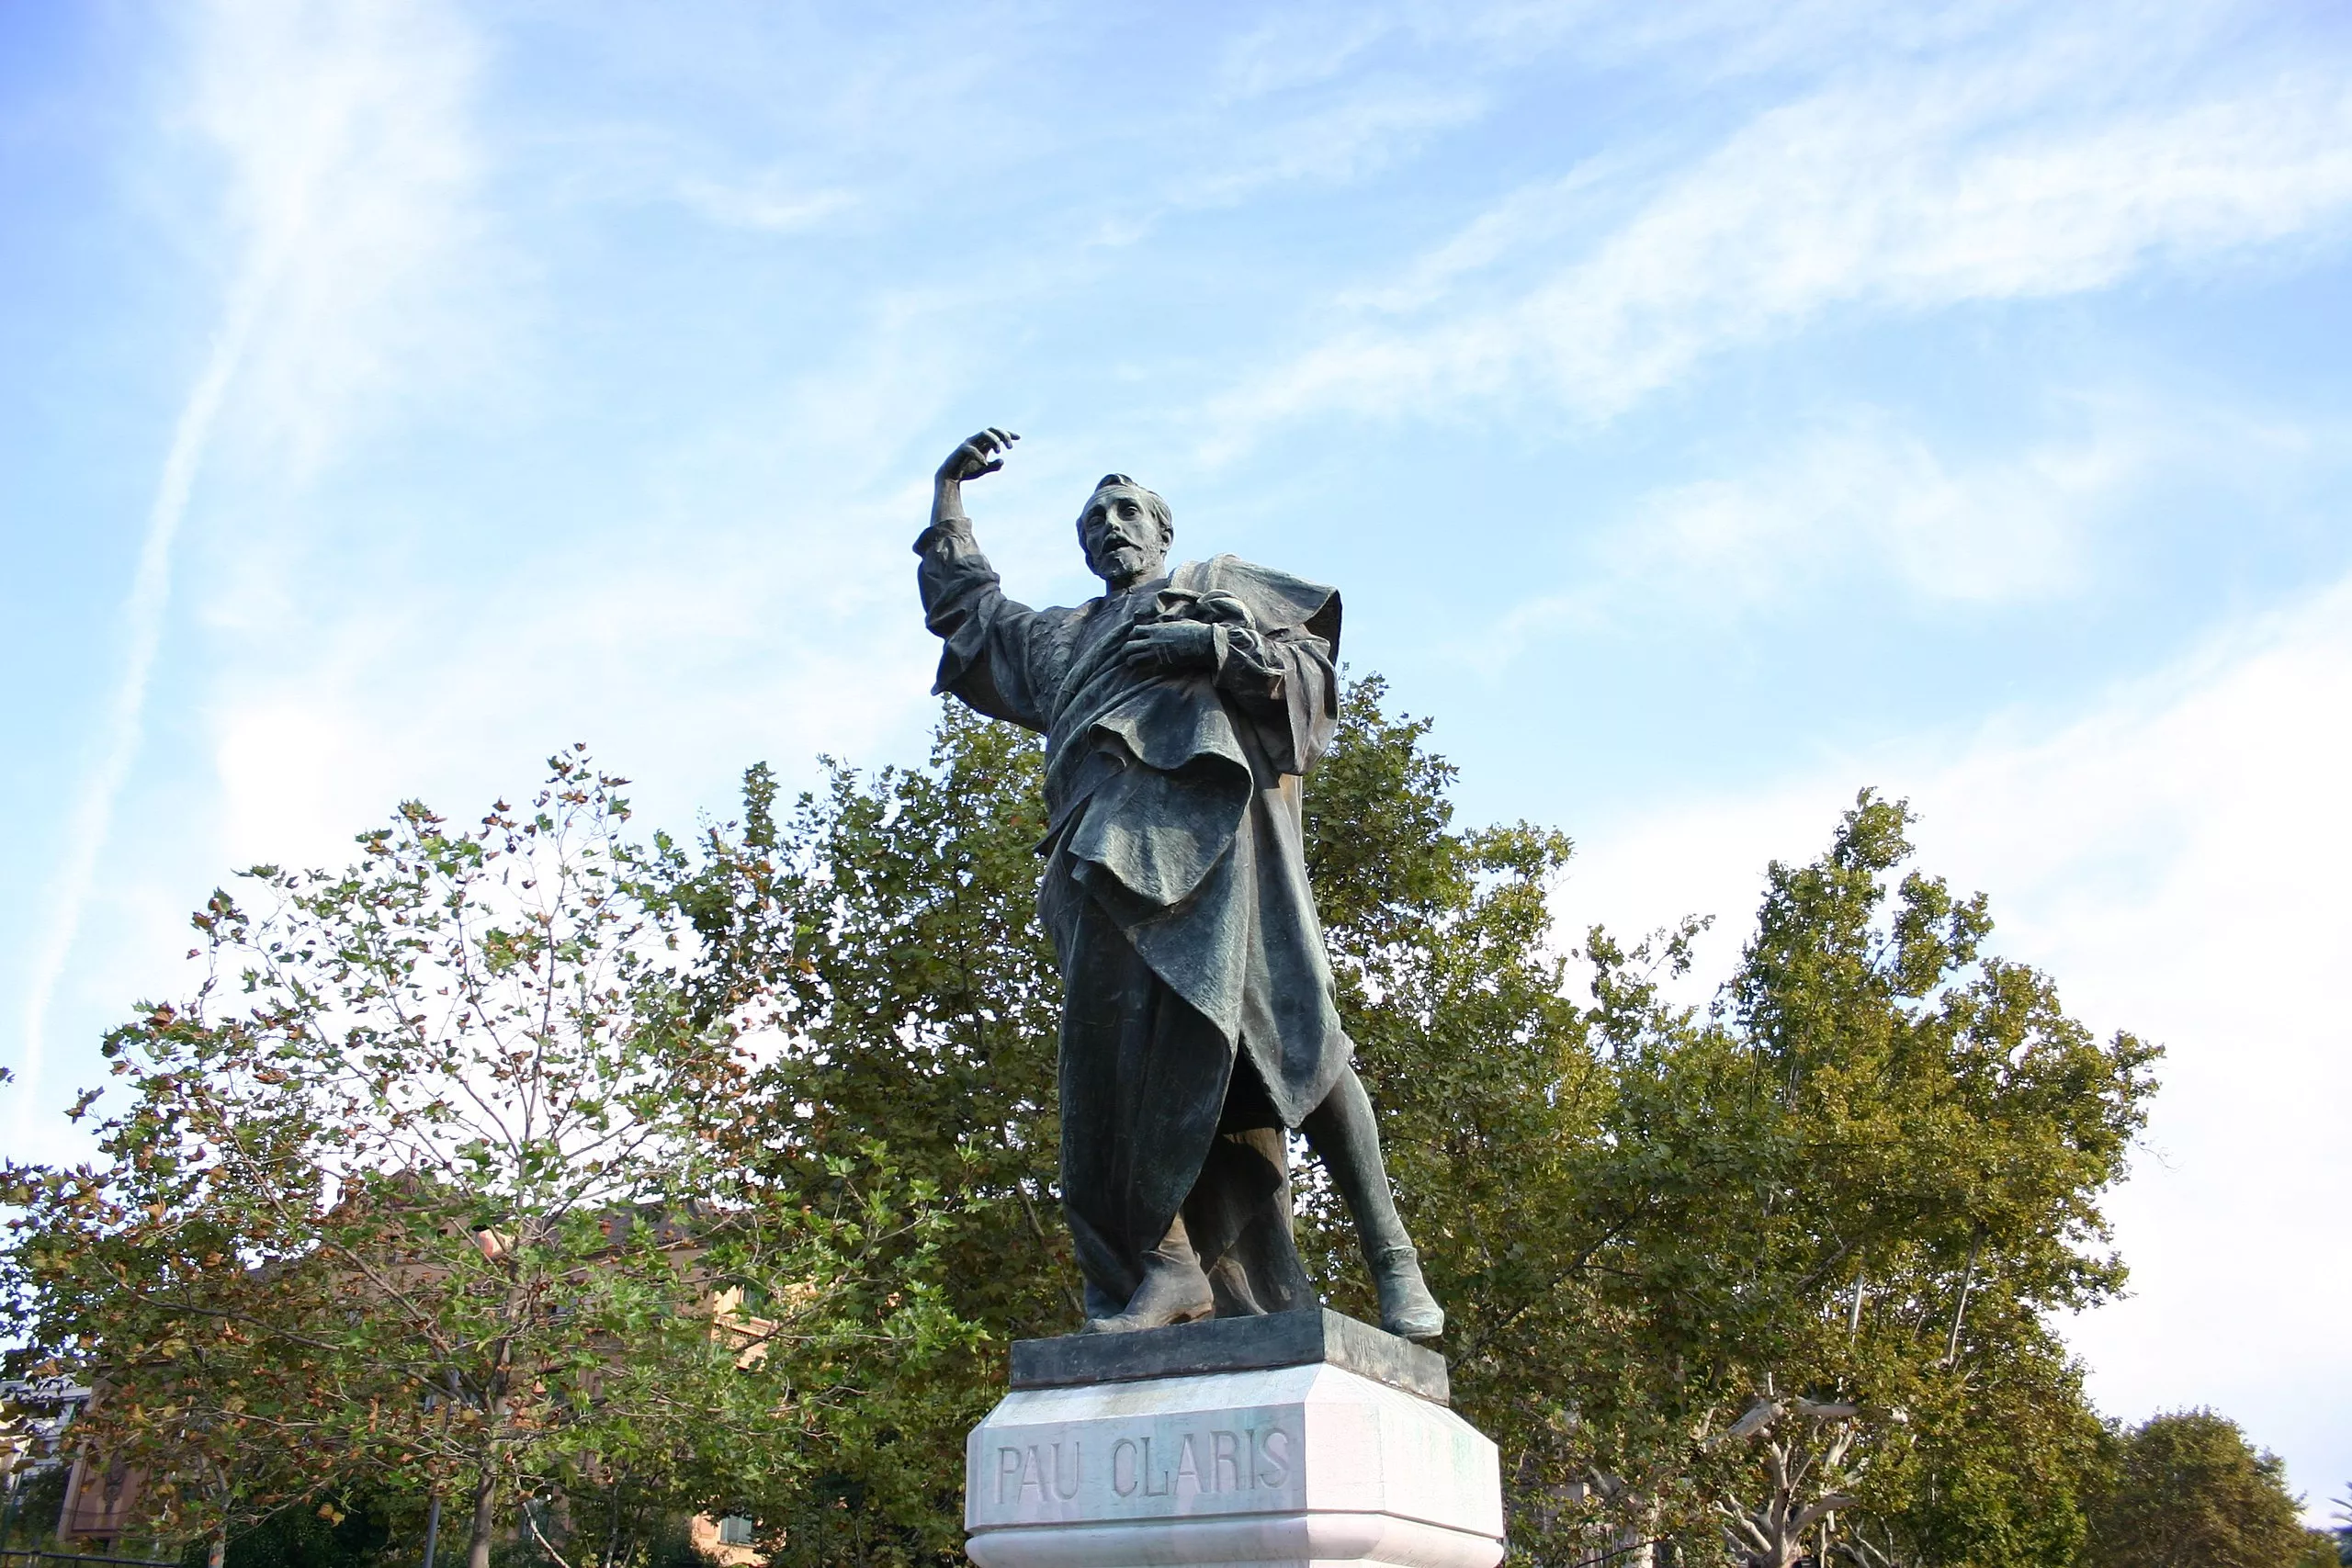 Aquesta estàtua de Pau Claris situada al final del passeig de Lluís Companys és obra de Rafael Atché i Ferré. Va ser inaugurada el 1917, però durant el franquisme va estar amagada en un magatzem municipal